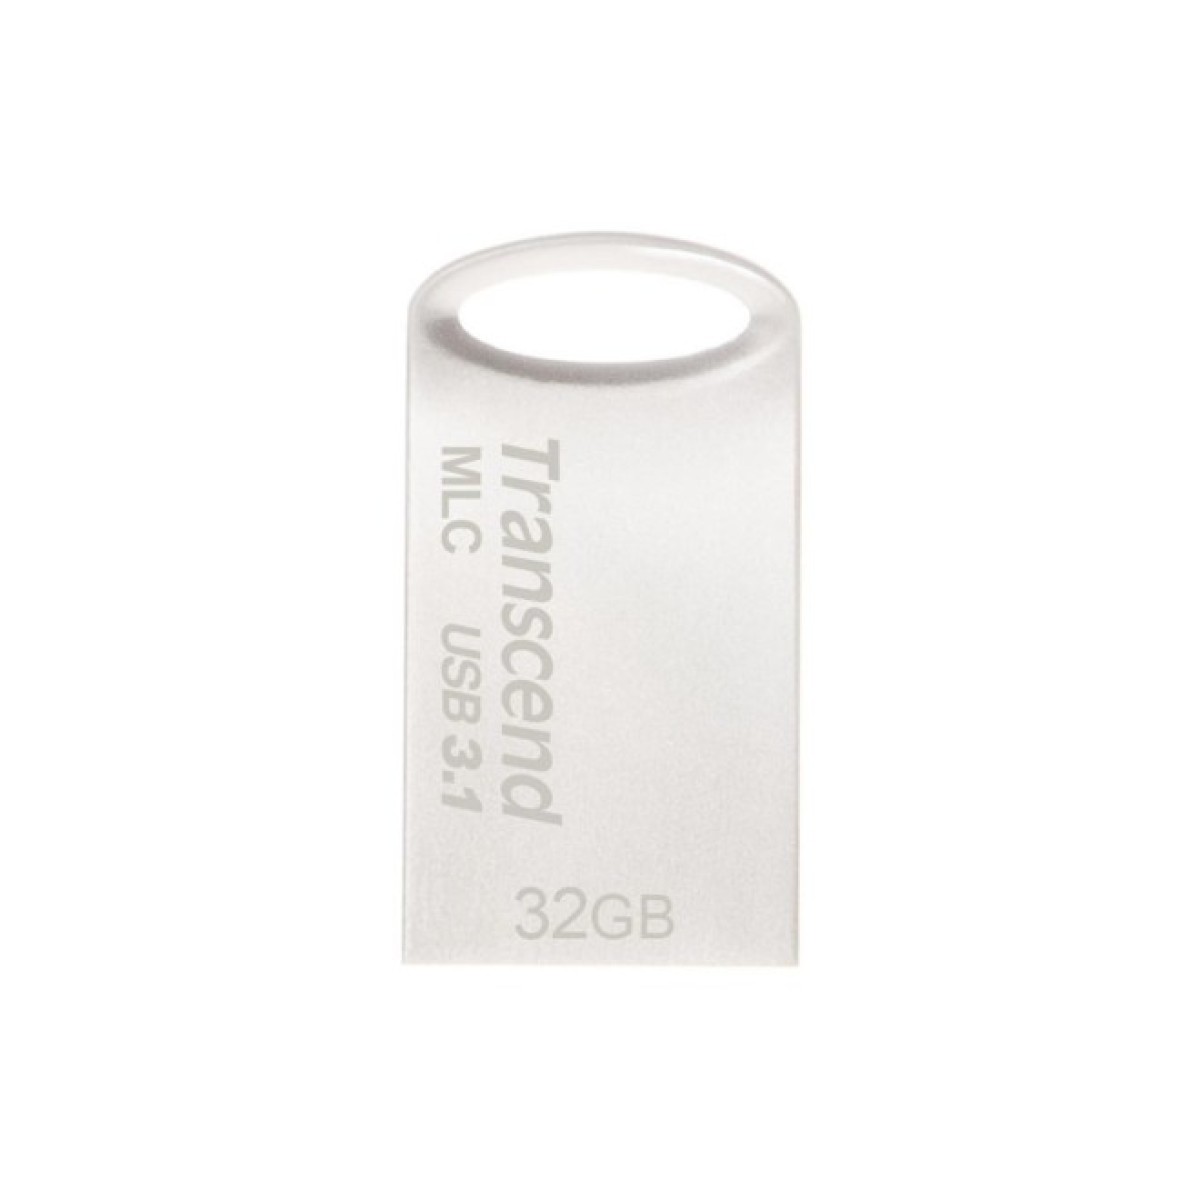 USB флеш накопитель Transcend 32GB JetFlash 720 Silver Plating USB 3.1 (TS32GJF720S) 256_256.jpg